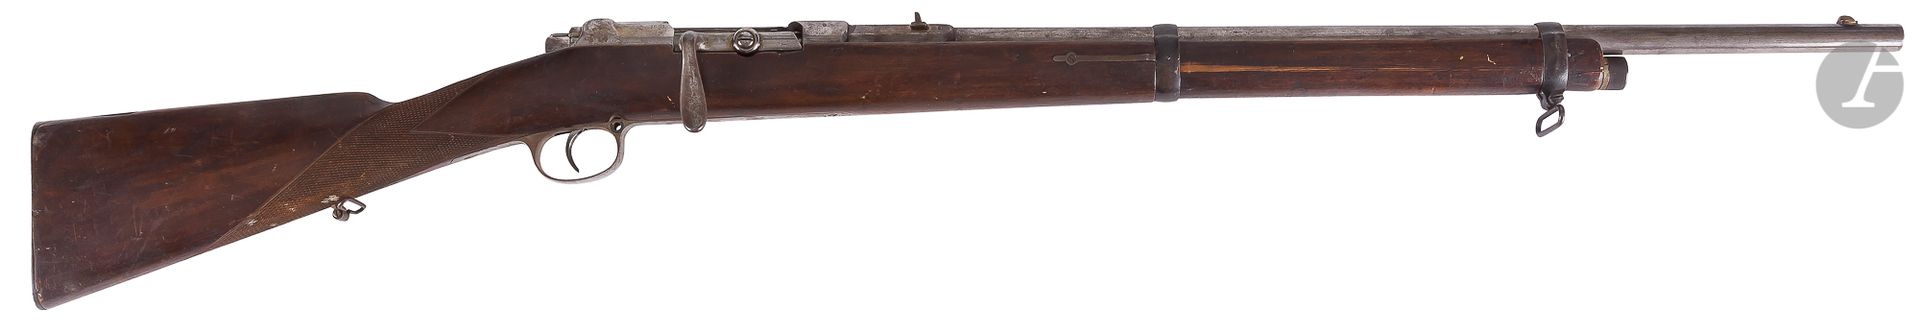 Null Mauser-Gewehr Modell 1871-84 modifiziert, Kaliber 11 mm, mit gebogenem Vers&hellip;